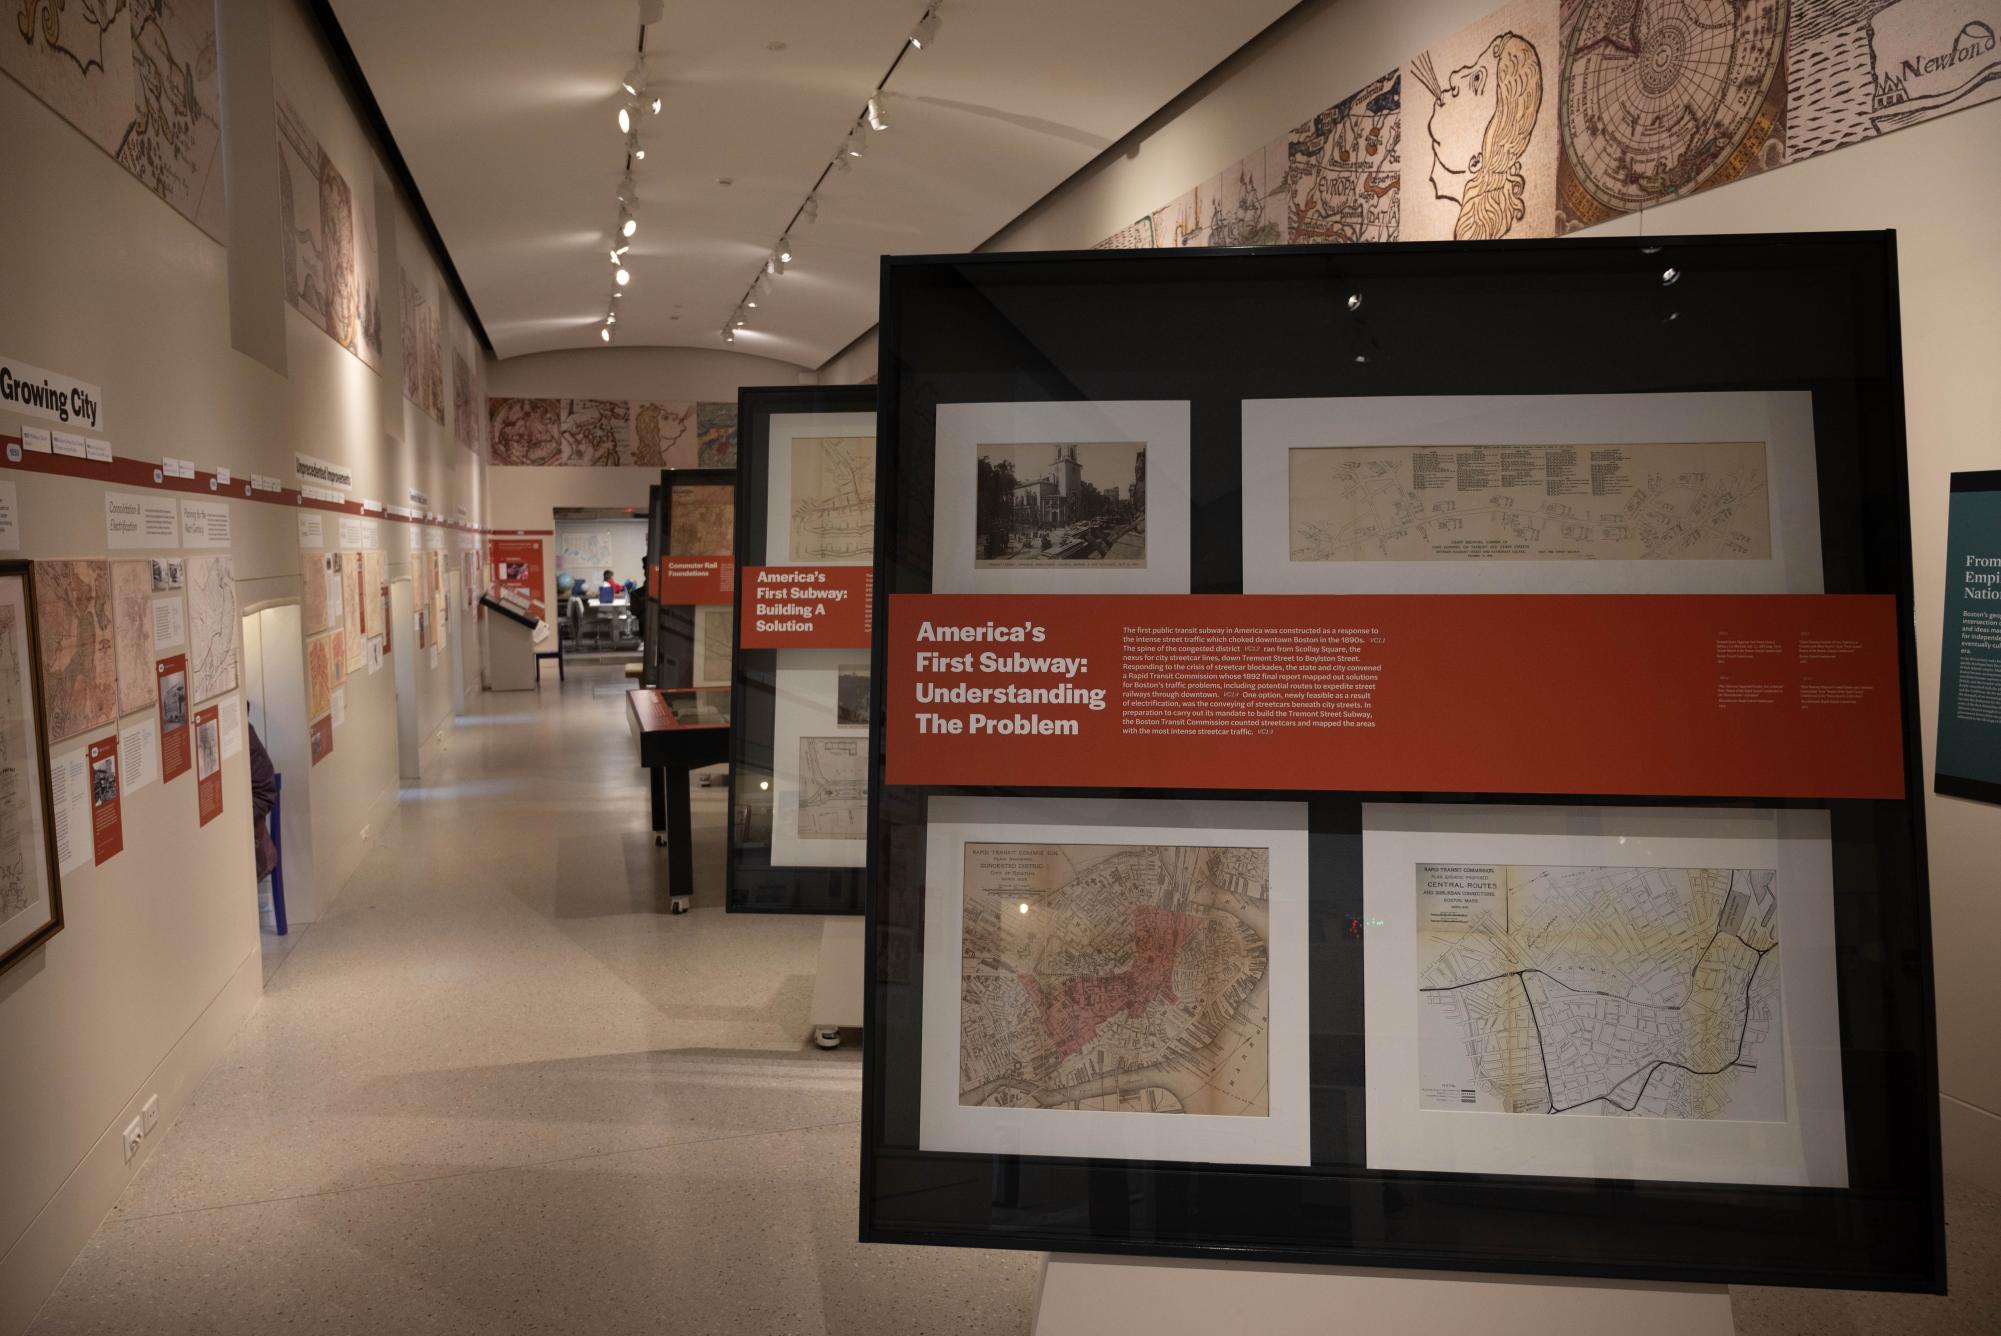 “环游城市”展览展示了波士顿交通系统的深厚历史